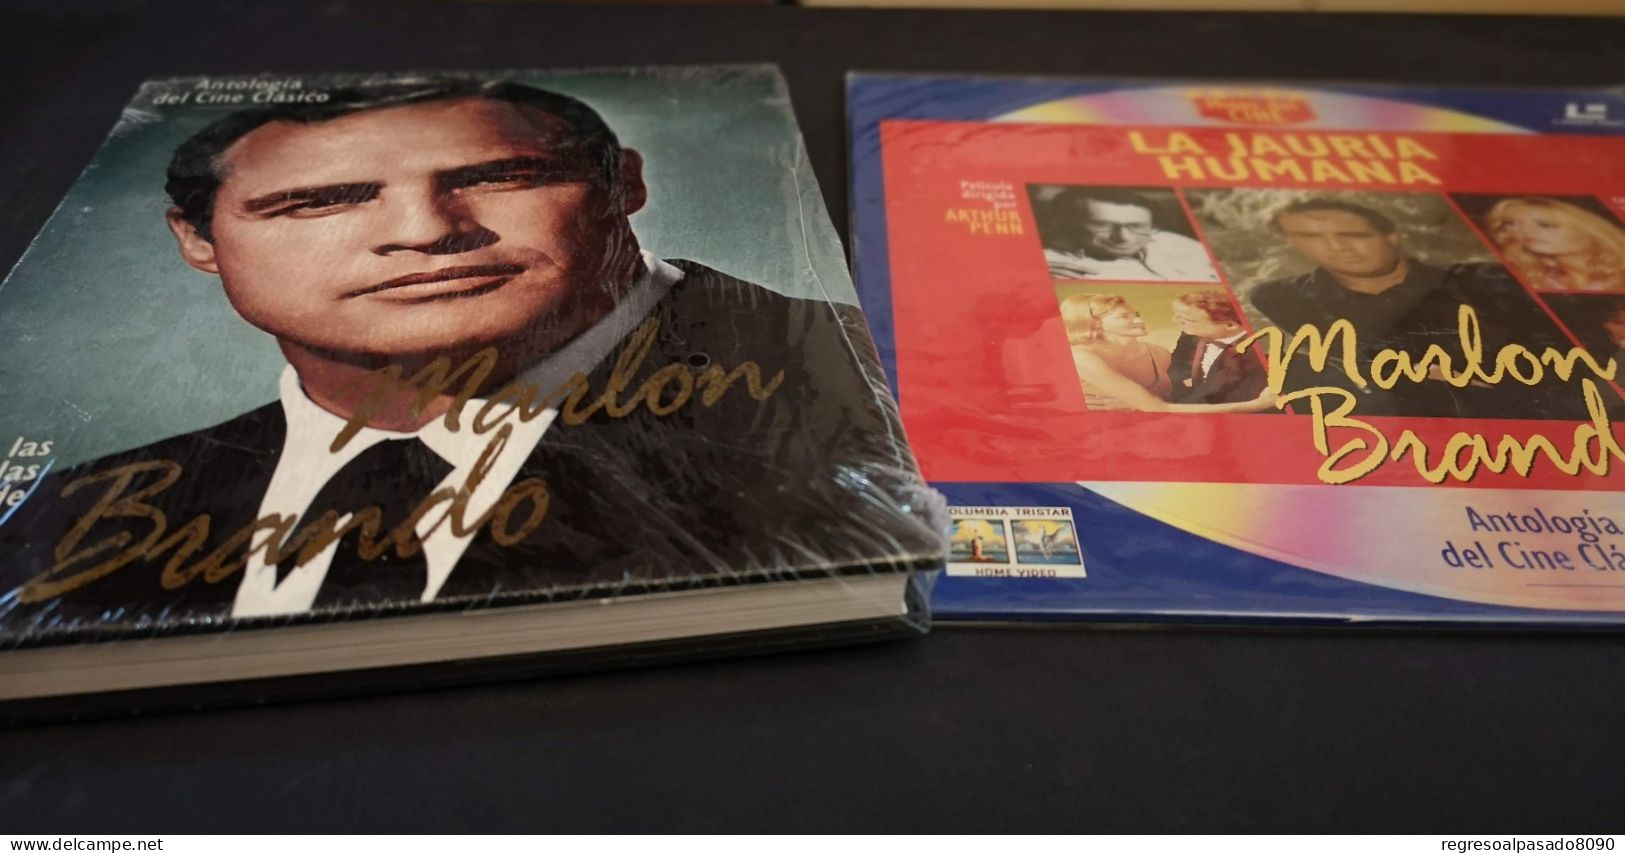 Marlon Brando Libro Y Película Laser Disc Laserdisc La Jauria Humana. Mitos Del Cine Planeta Años 90 - Classic